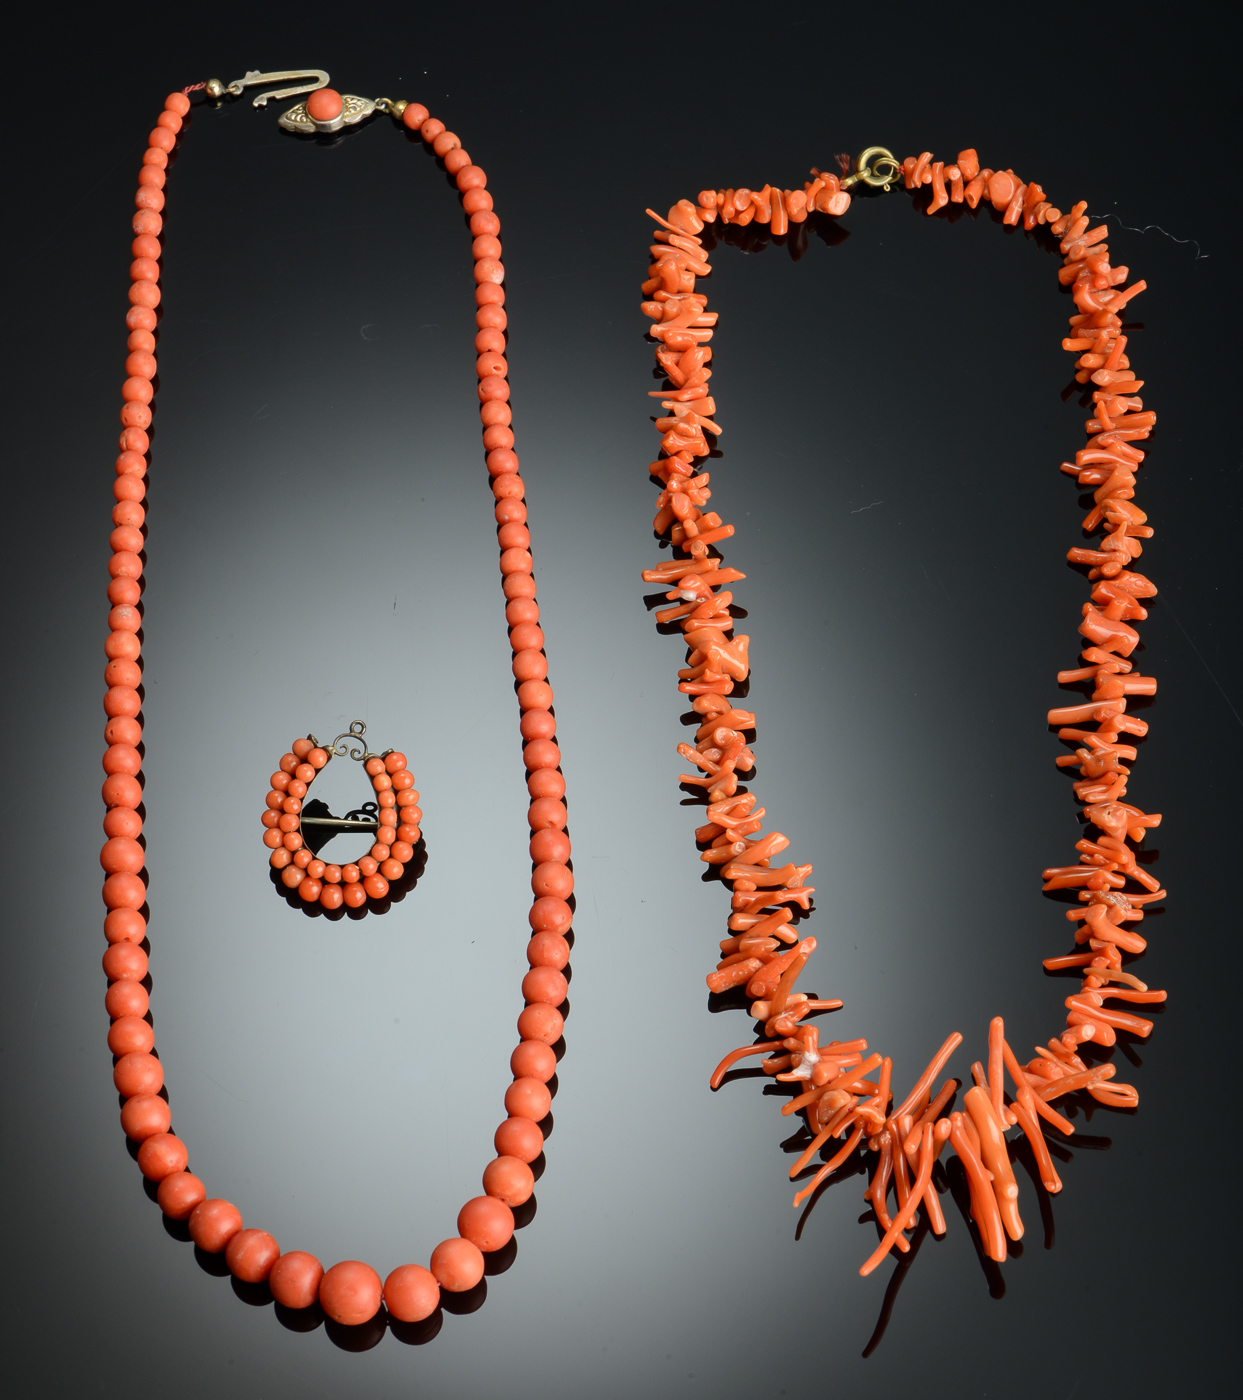 Samling smykker. (3) | Lauritz.com